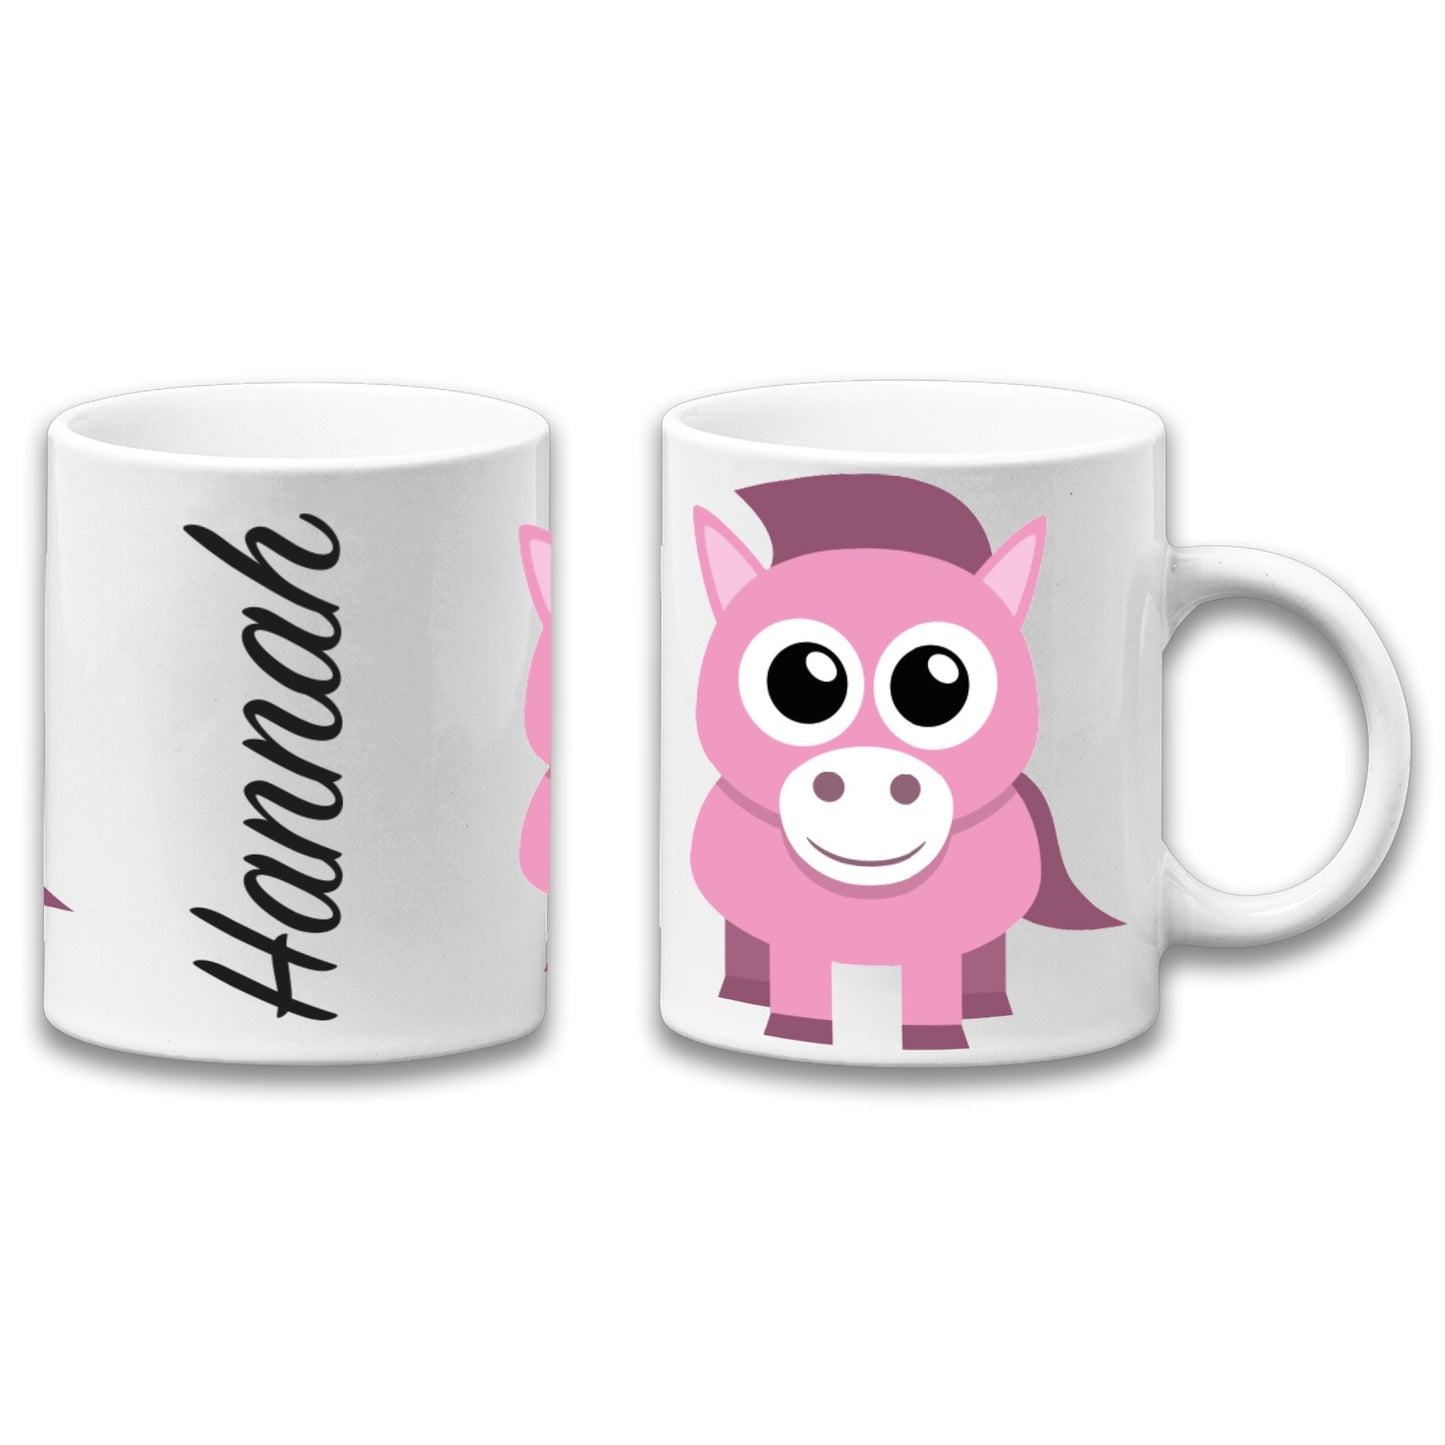 Adorable Pony Personalised Your Name Gift Mug